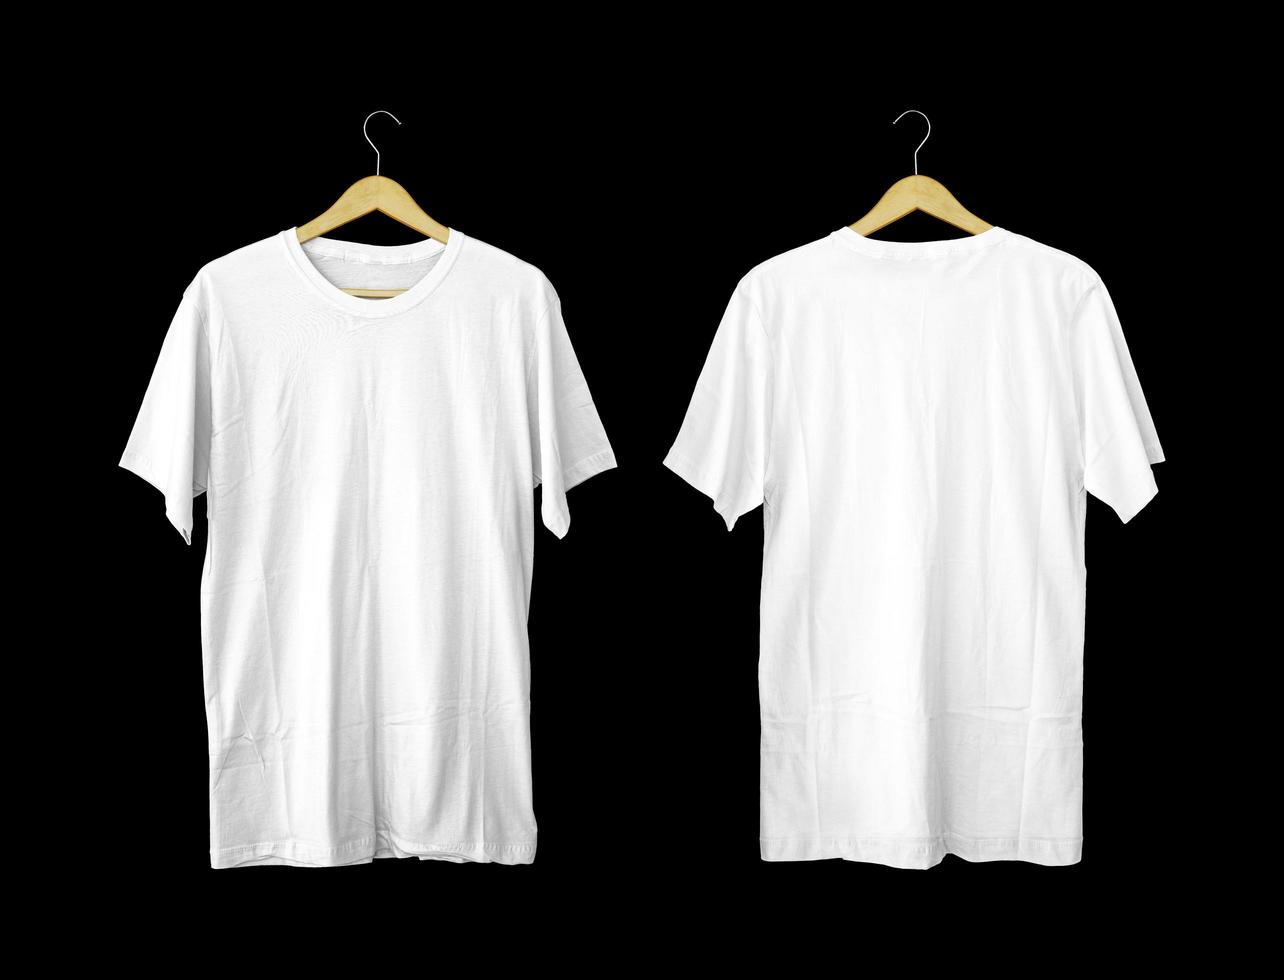 kortärmade vita t-shirts för mockups. vanlig t-shirt med svart bakgrund för förhandsgranskning av design. t-shirt på galge för visning. foto